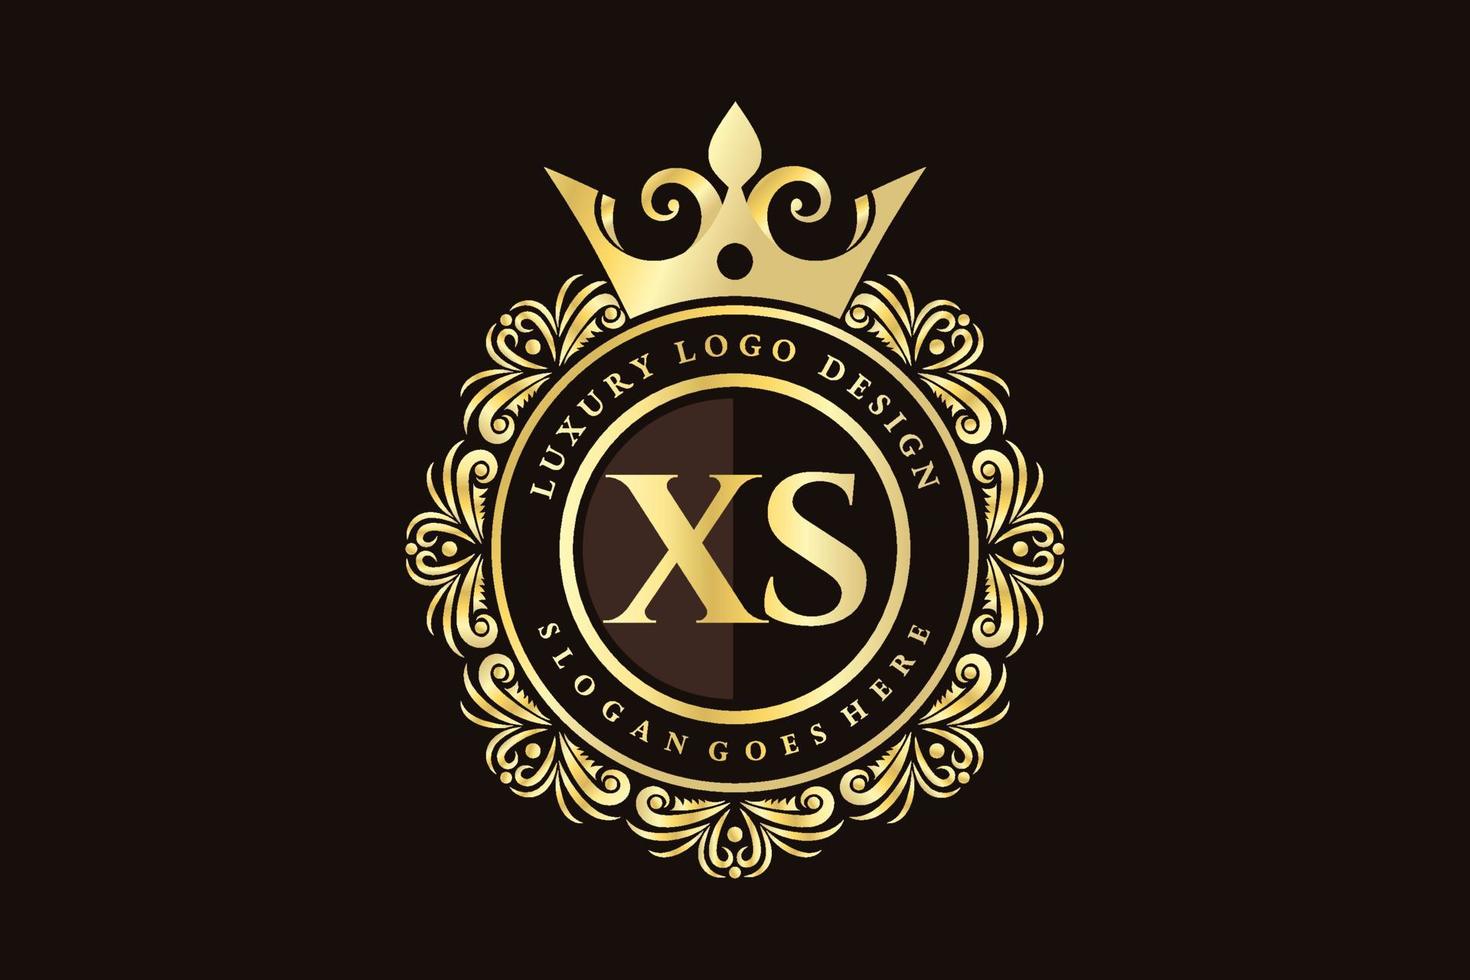 xs letra inicial oro caligráfico femenino floral dibujado a mano monograma heráldico antiguo estilo vintage diseño de logotipo de lujo vector premium